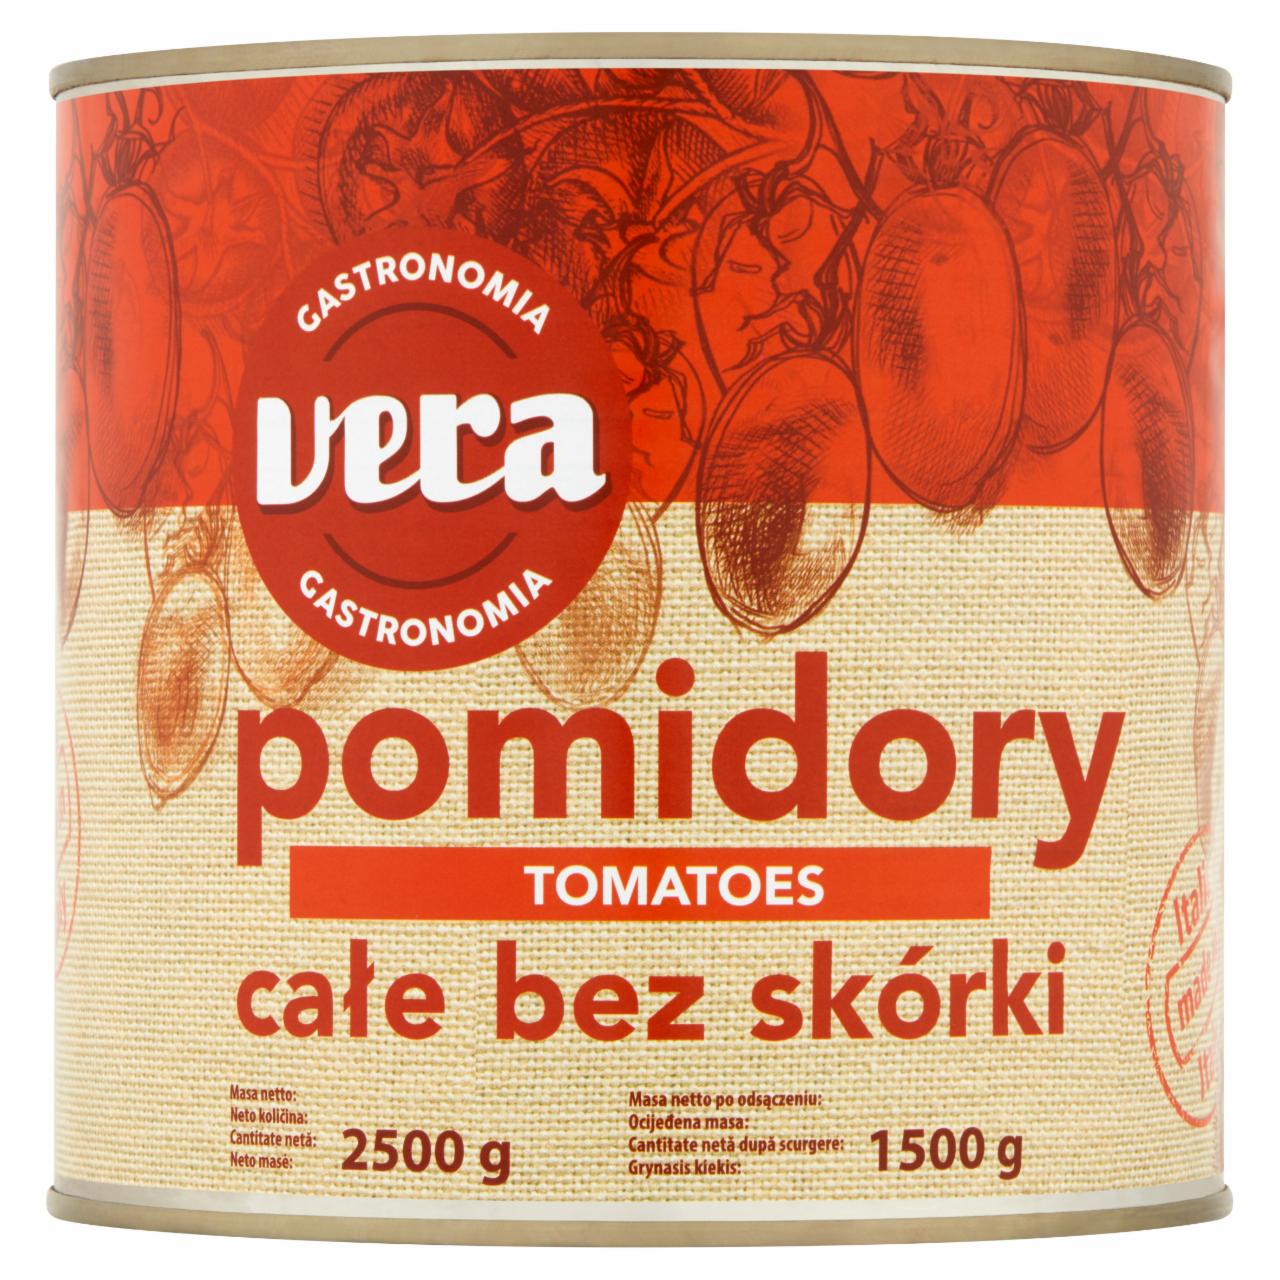 Zdjęcia - Vera Gastronomia Pomidory całe bez skórki 2500 g